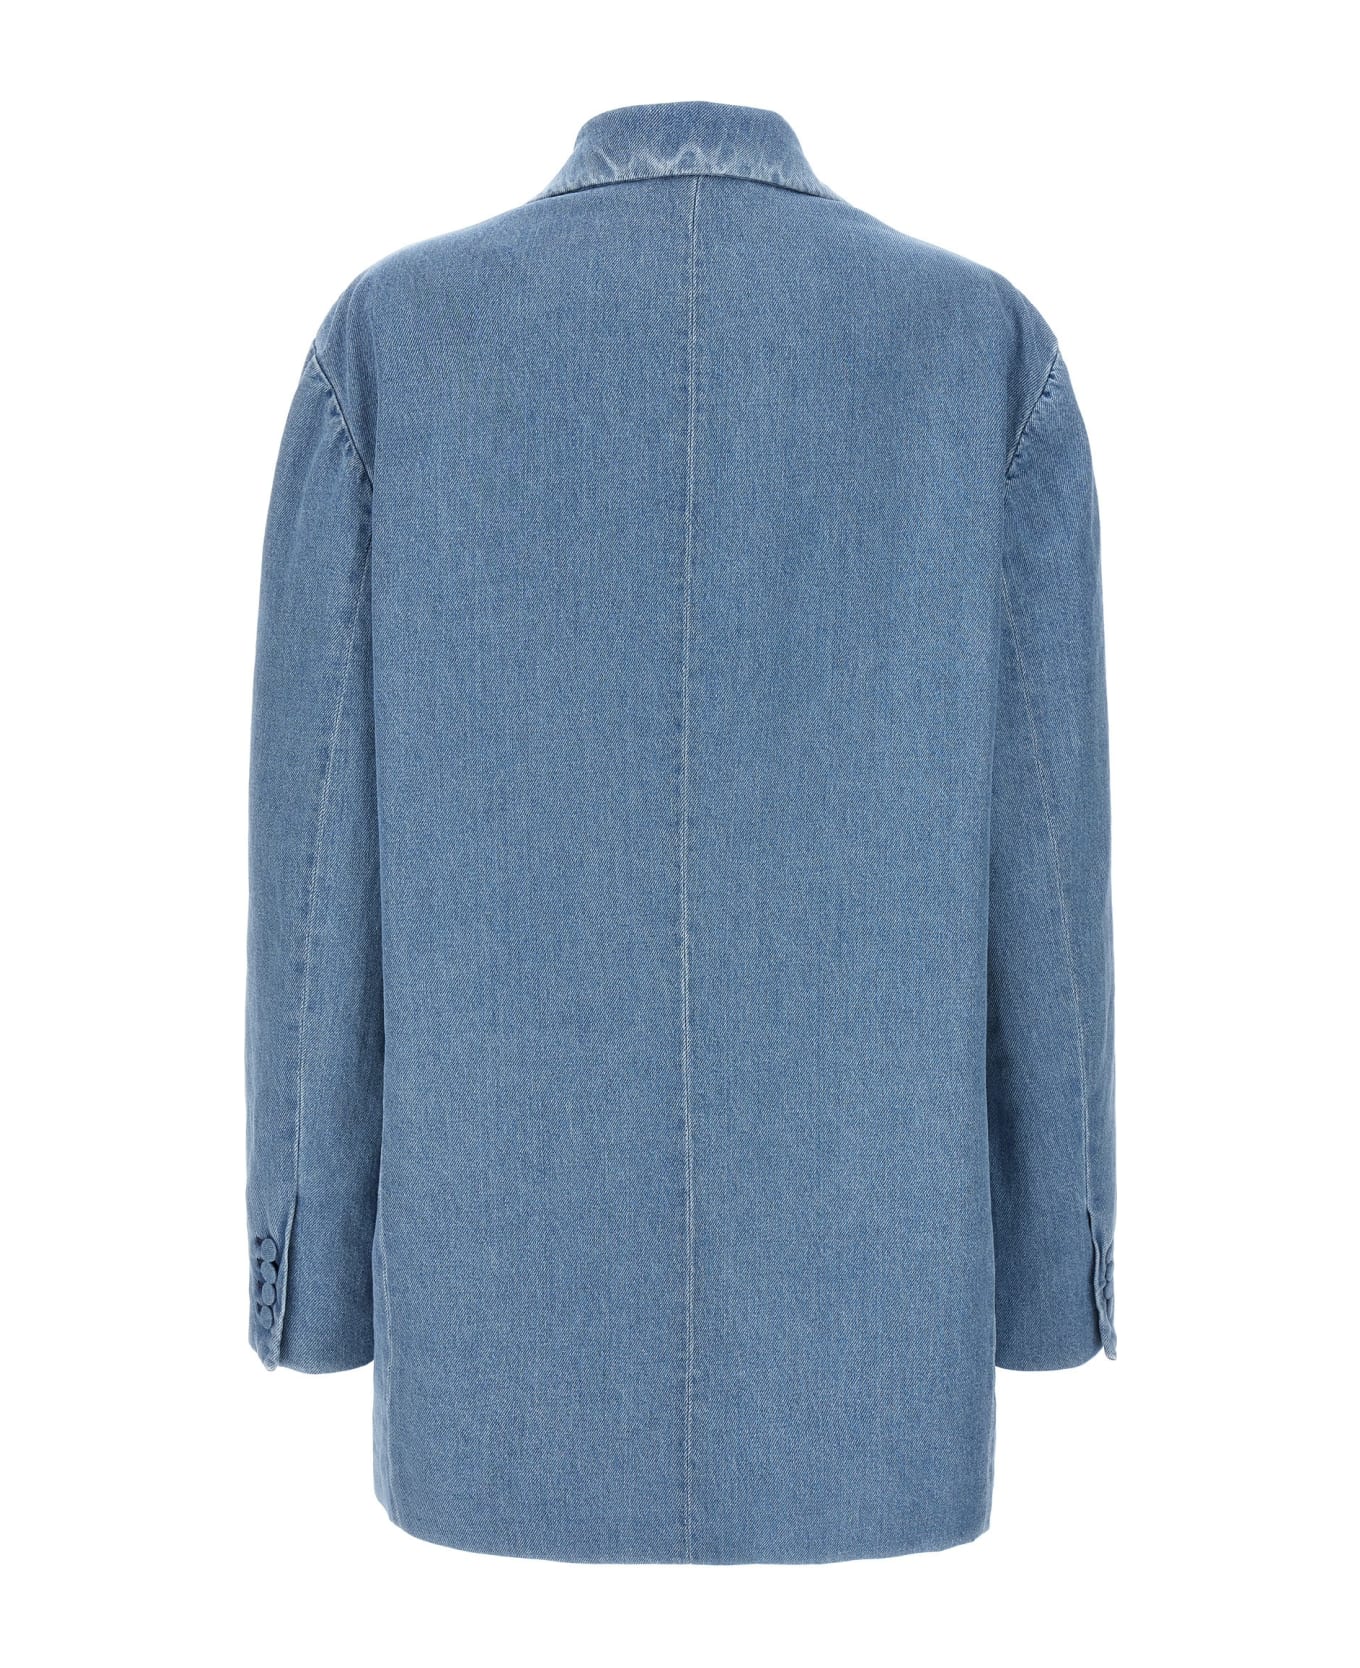 Dries Van Noten 'bliss' Blazer - Light Blue コート